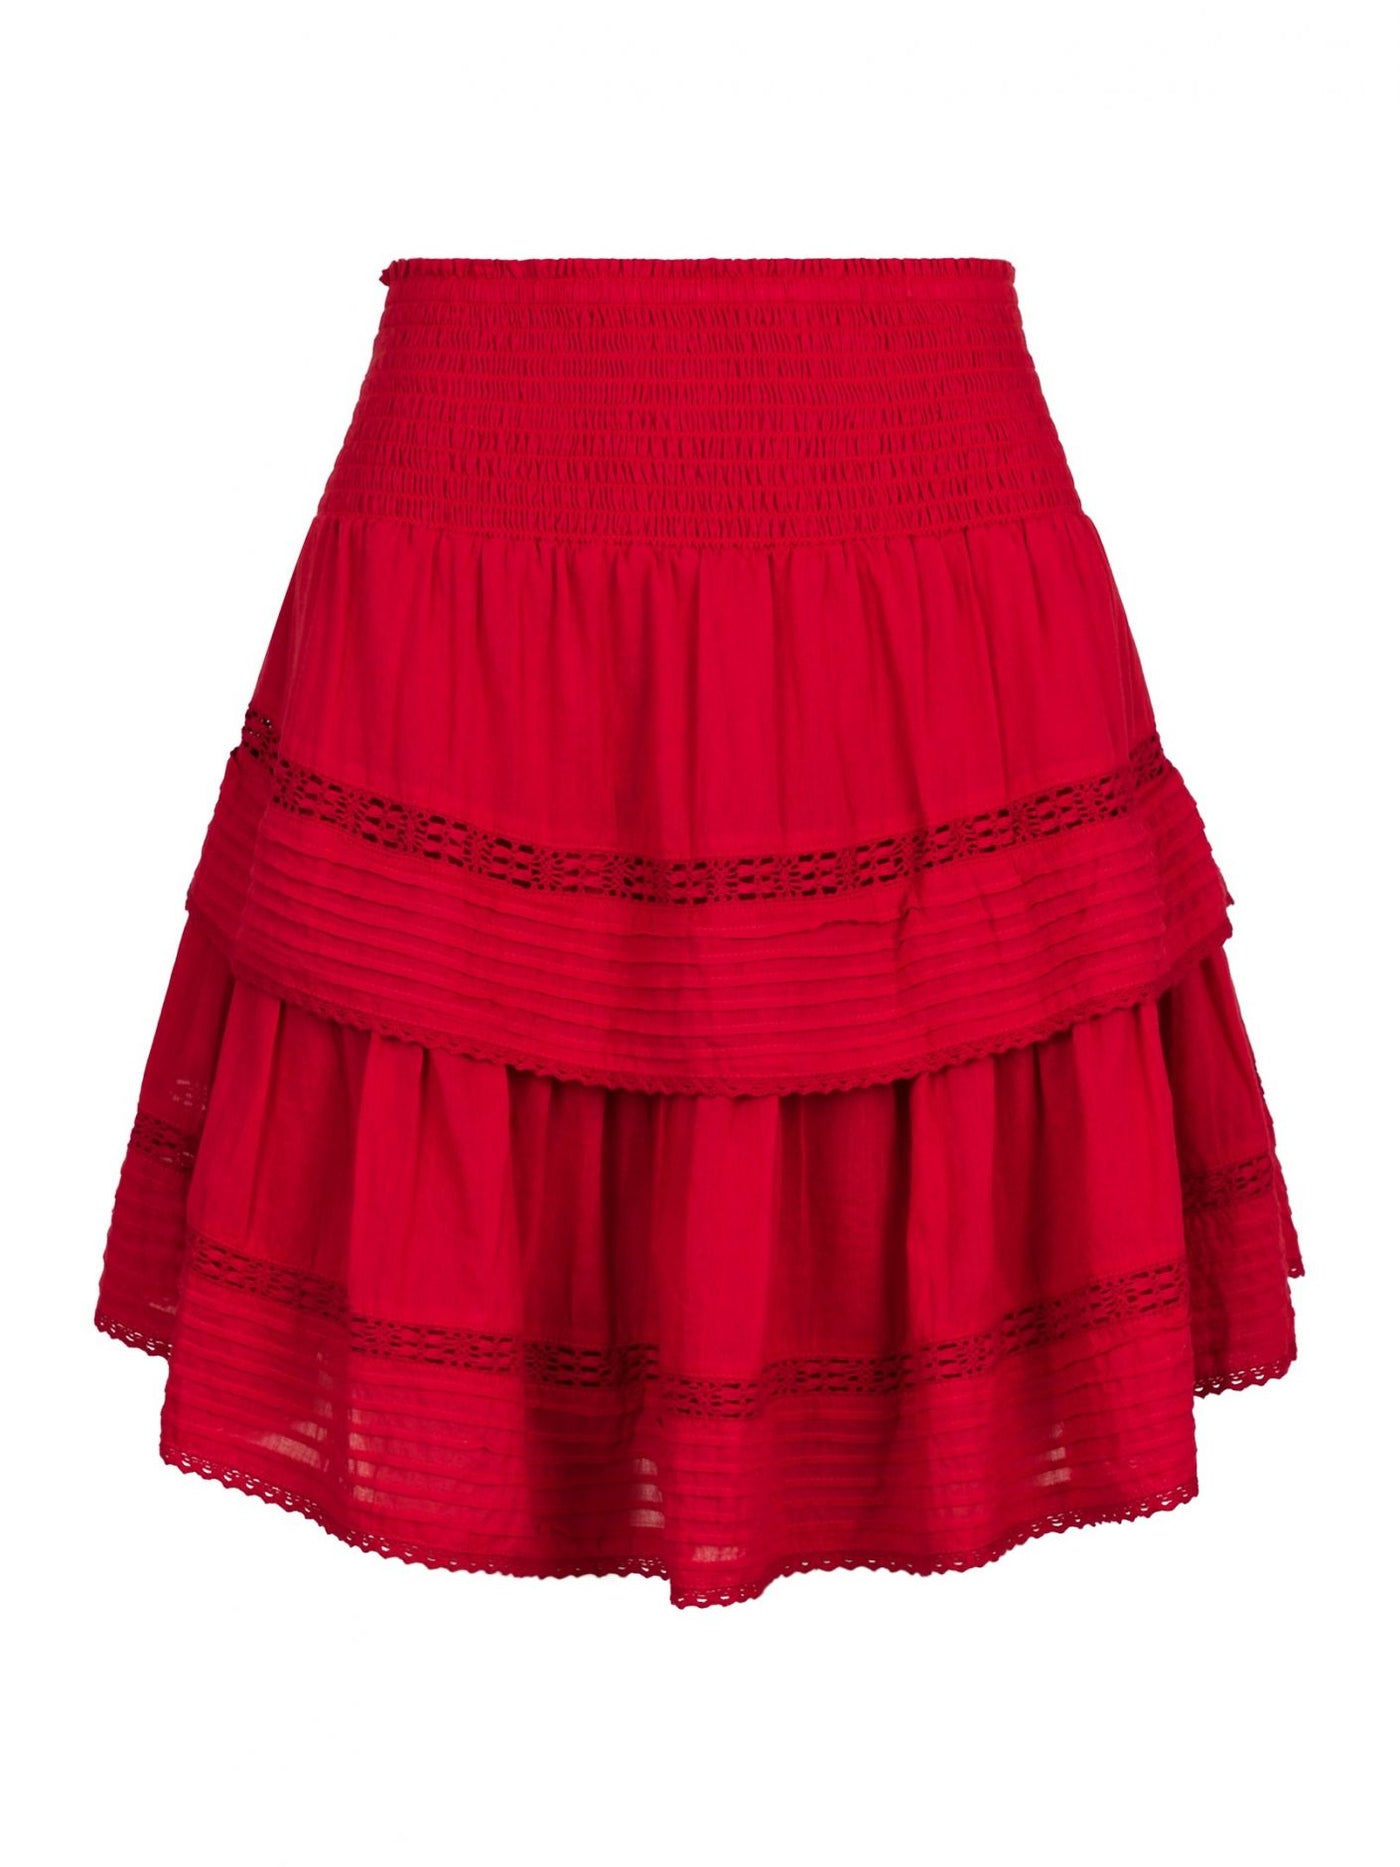 Kenya S Voile Skirt